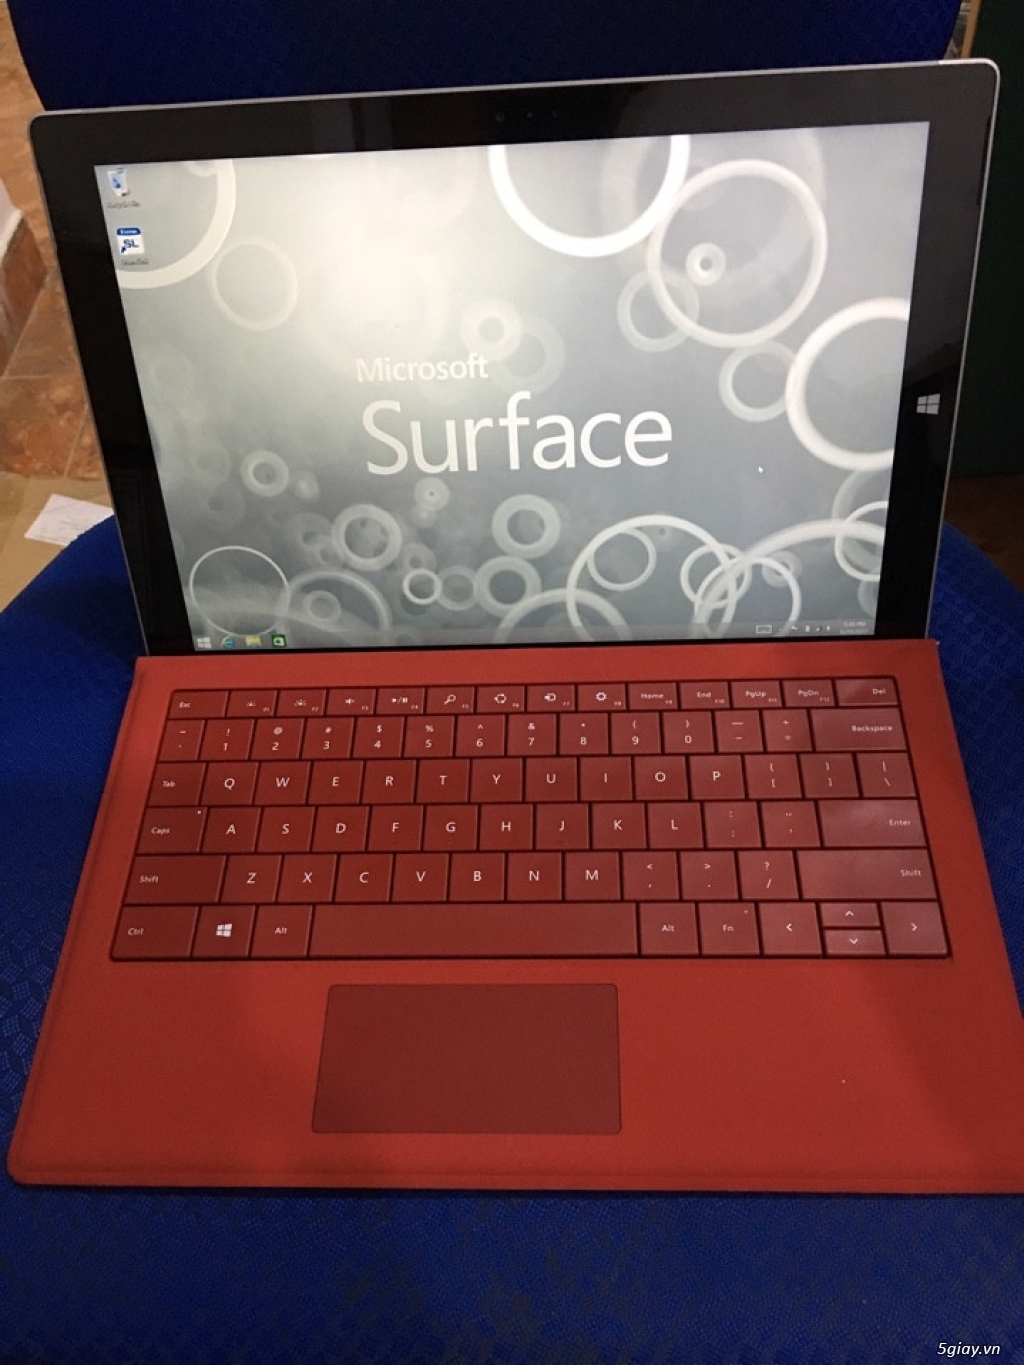 Surface Pro 3 Core i5 - SSD 128GB - RAM 4GB xách tay từ Mỹ giá rẻ - 1